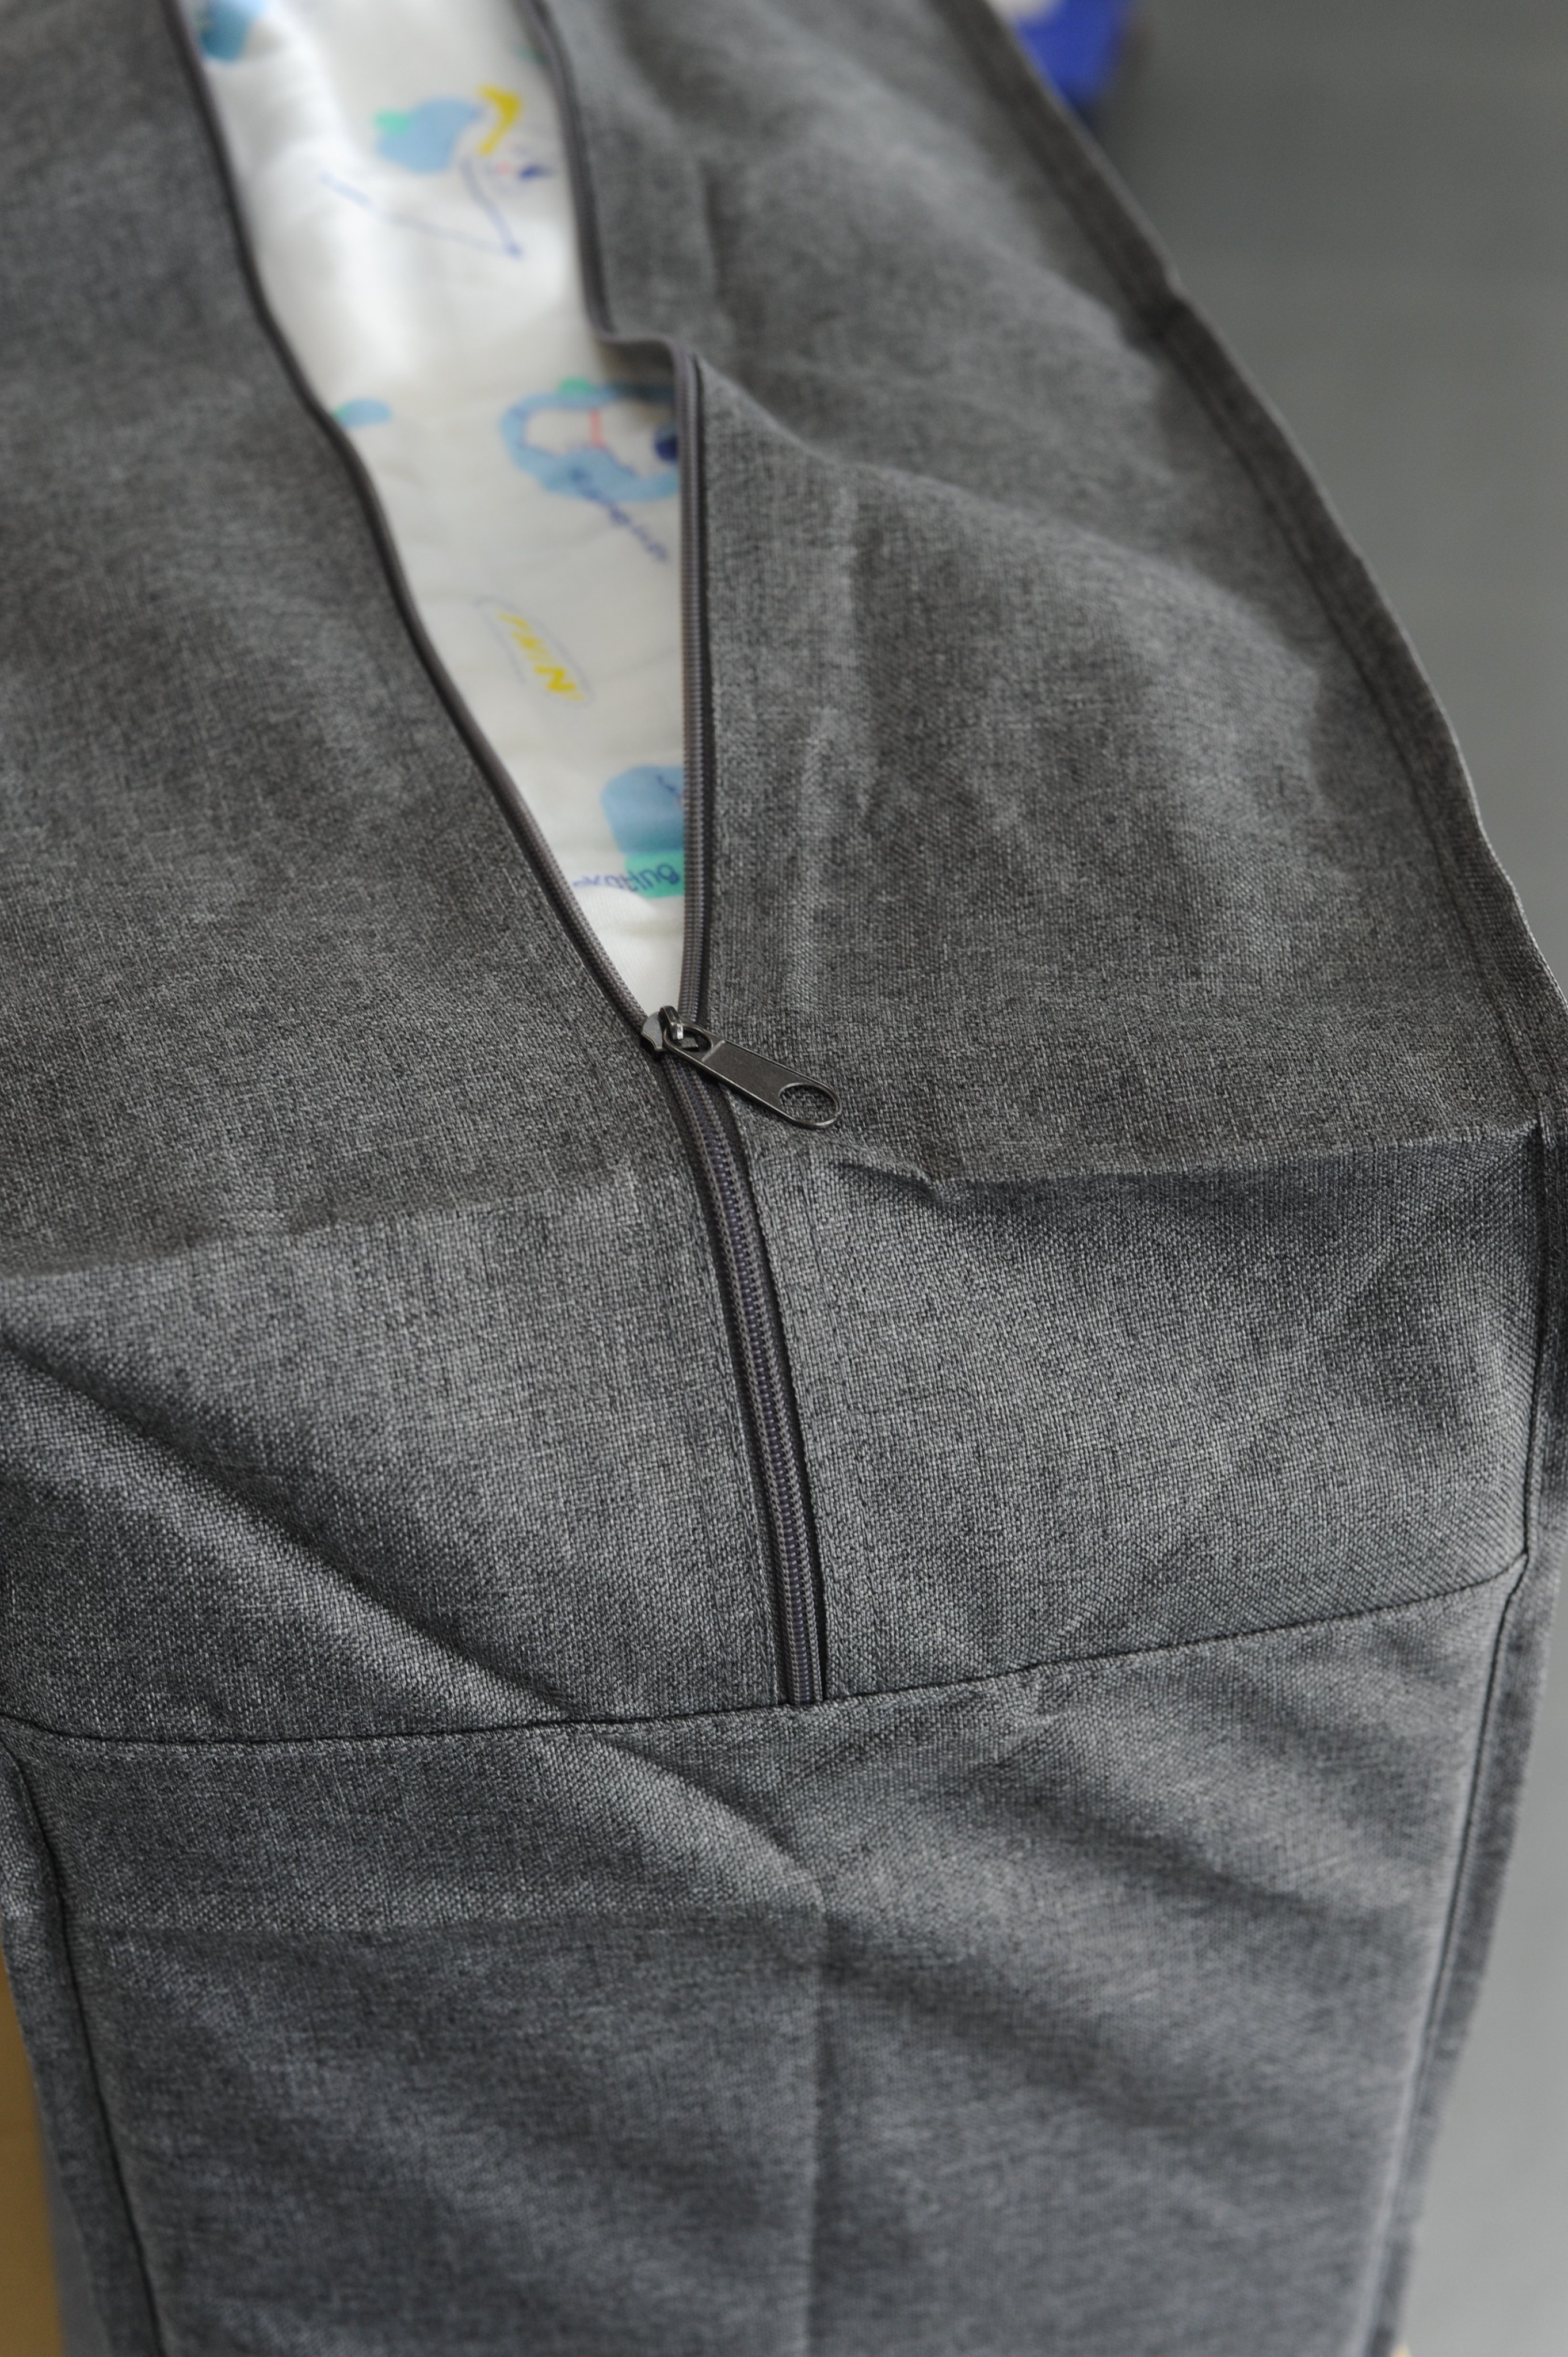 Túi đựng đồ đa năng cỡ lớn HQ5 chất liệu vải Oxford đựng chăn màn quần áo dododios